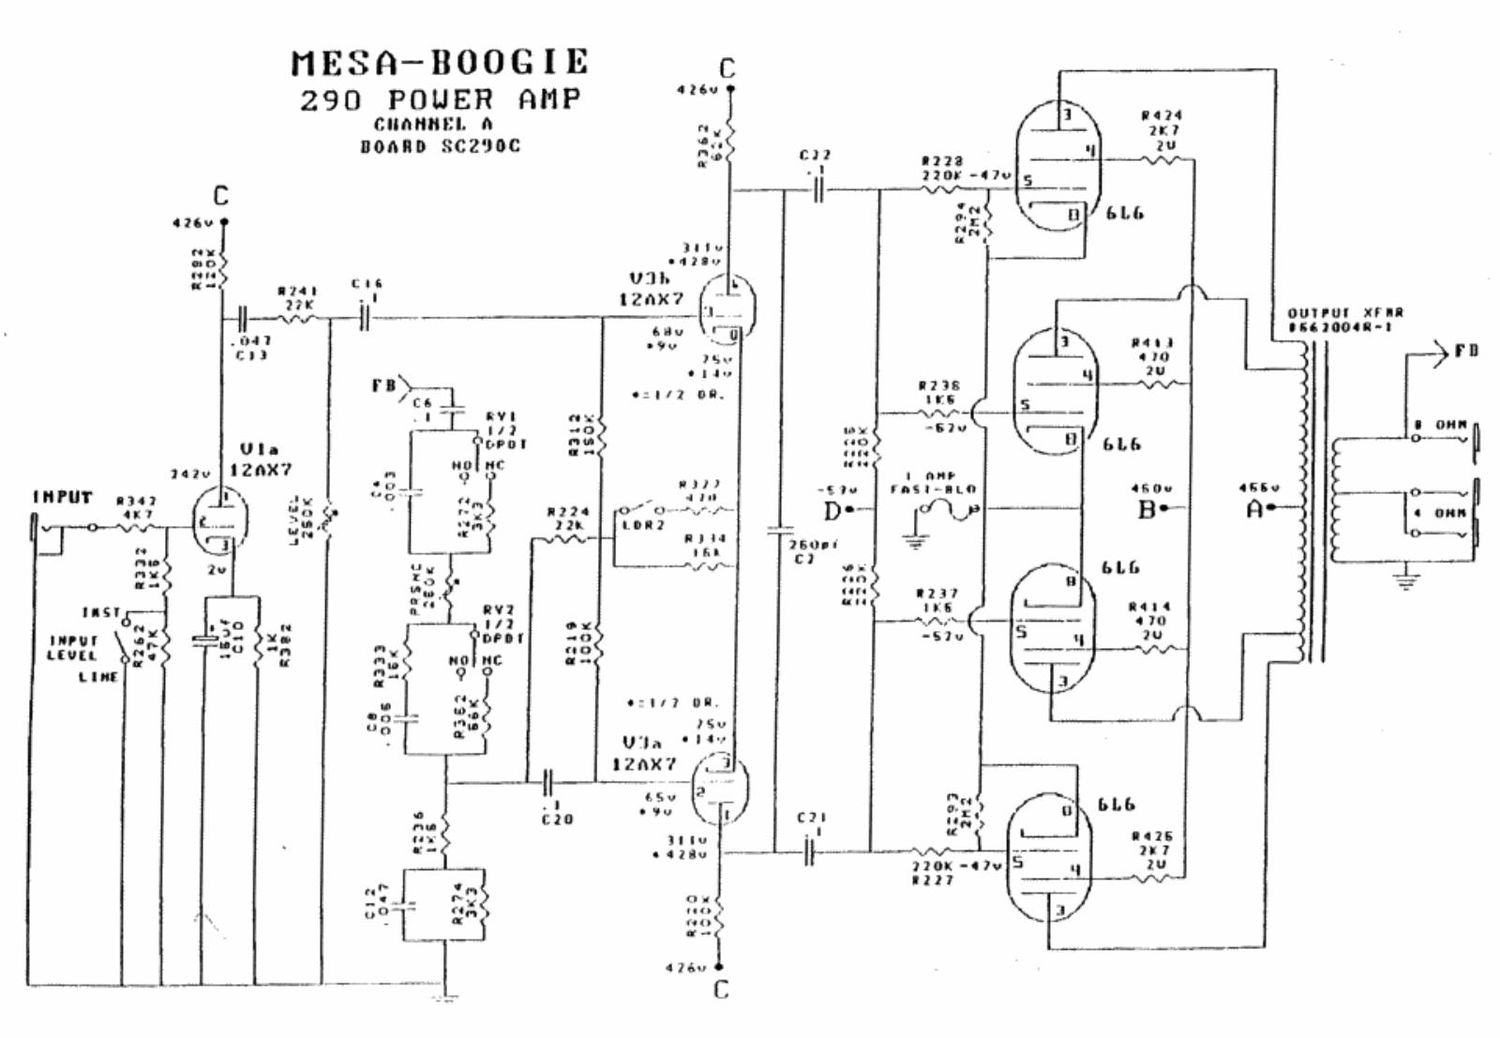 mesaboogie 290 stereo power amp schematics